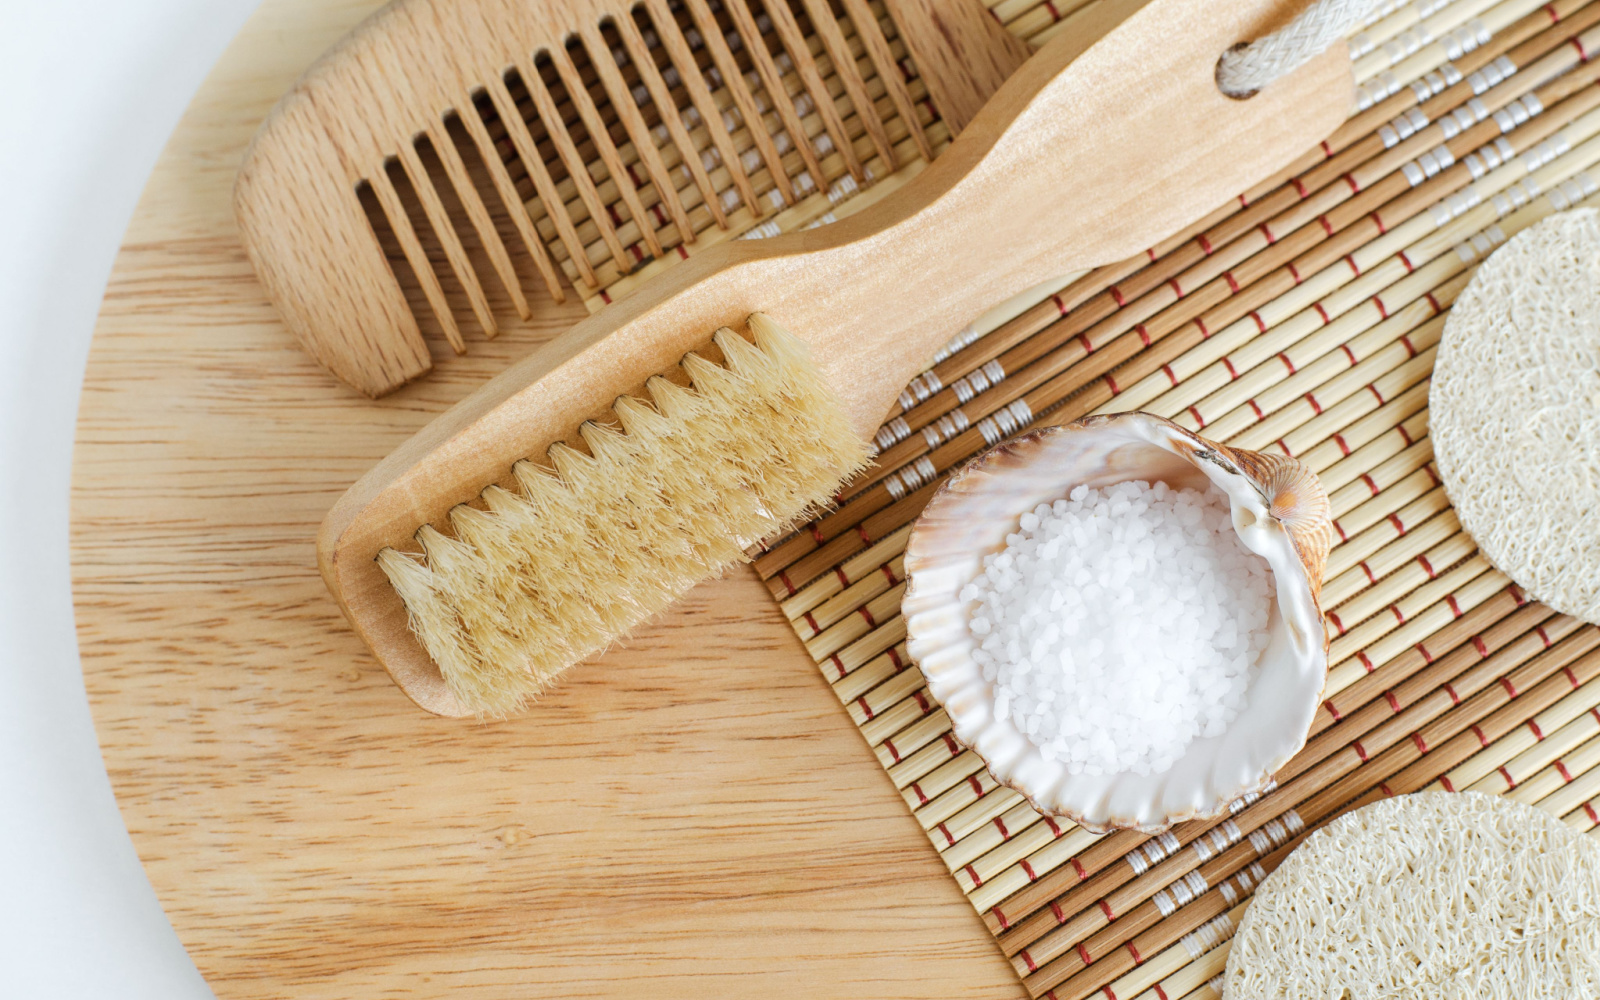 How to Use Epsom Salt for Hair Growth | 3 Methods